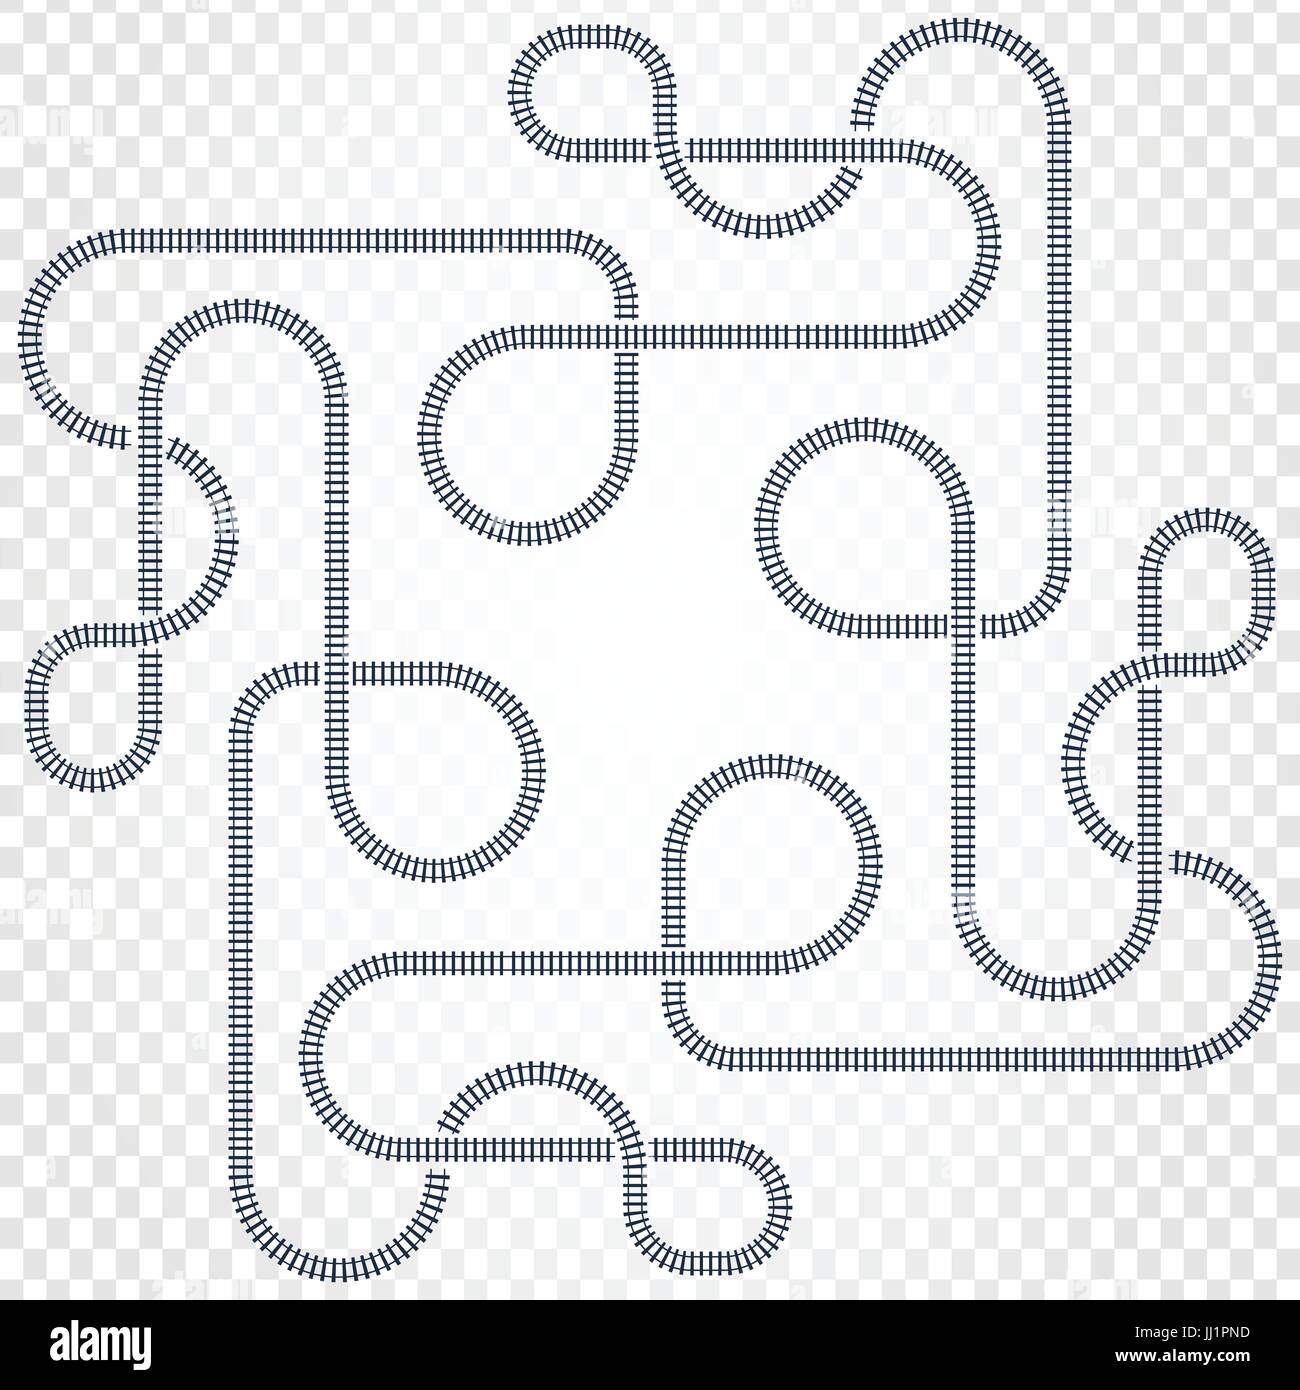 Bahnlinie, Labyrinth und Knoten. Karte der Straßenbahn für Züge mit Kurven und Brücken-Vektor-illustration Stock Vektor